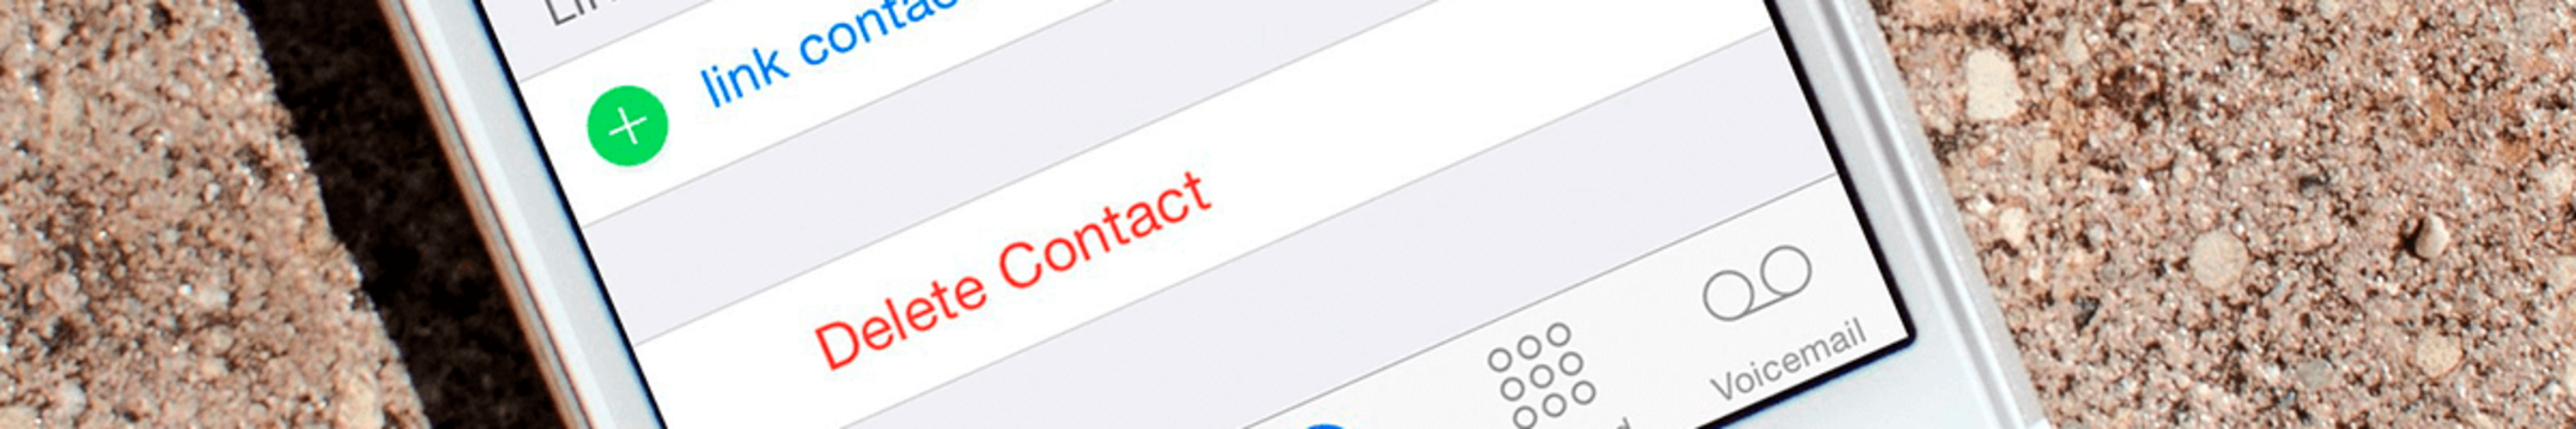 Как выделить и удалить несколько контактов на iPhone одновременно?